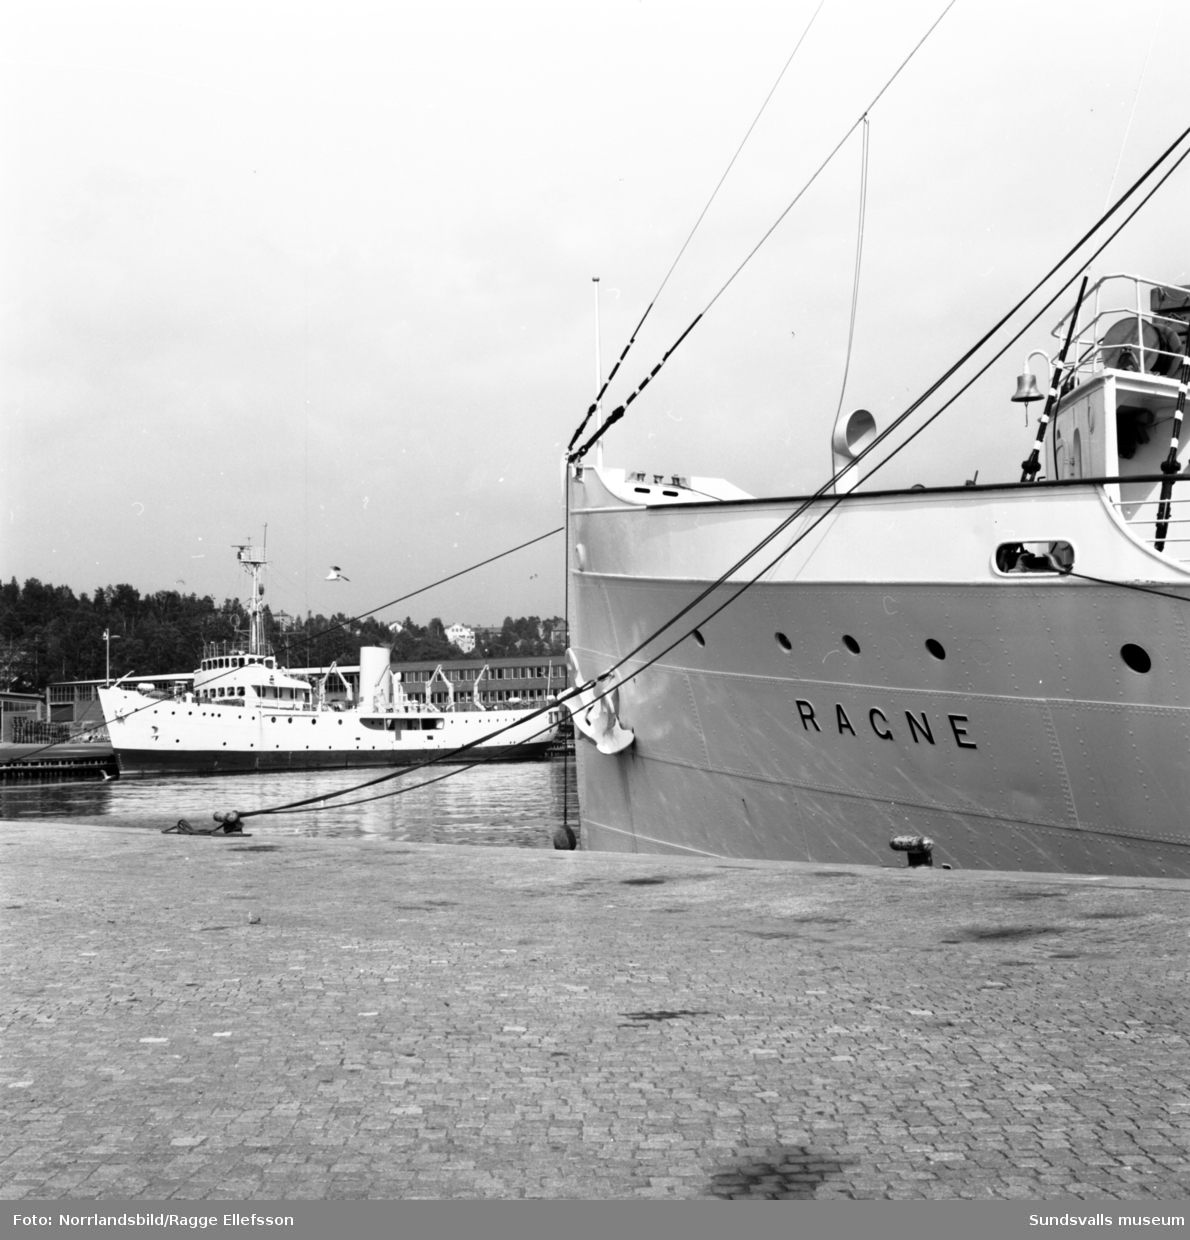 Båtarna Ragne och Gustaf af Klint ligger vid kaj i Sundsvalls hamn.